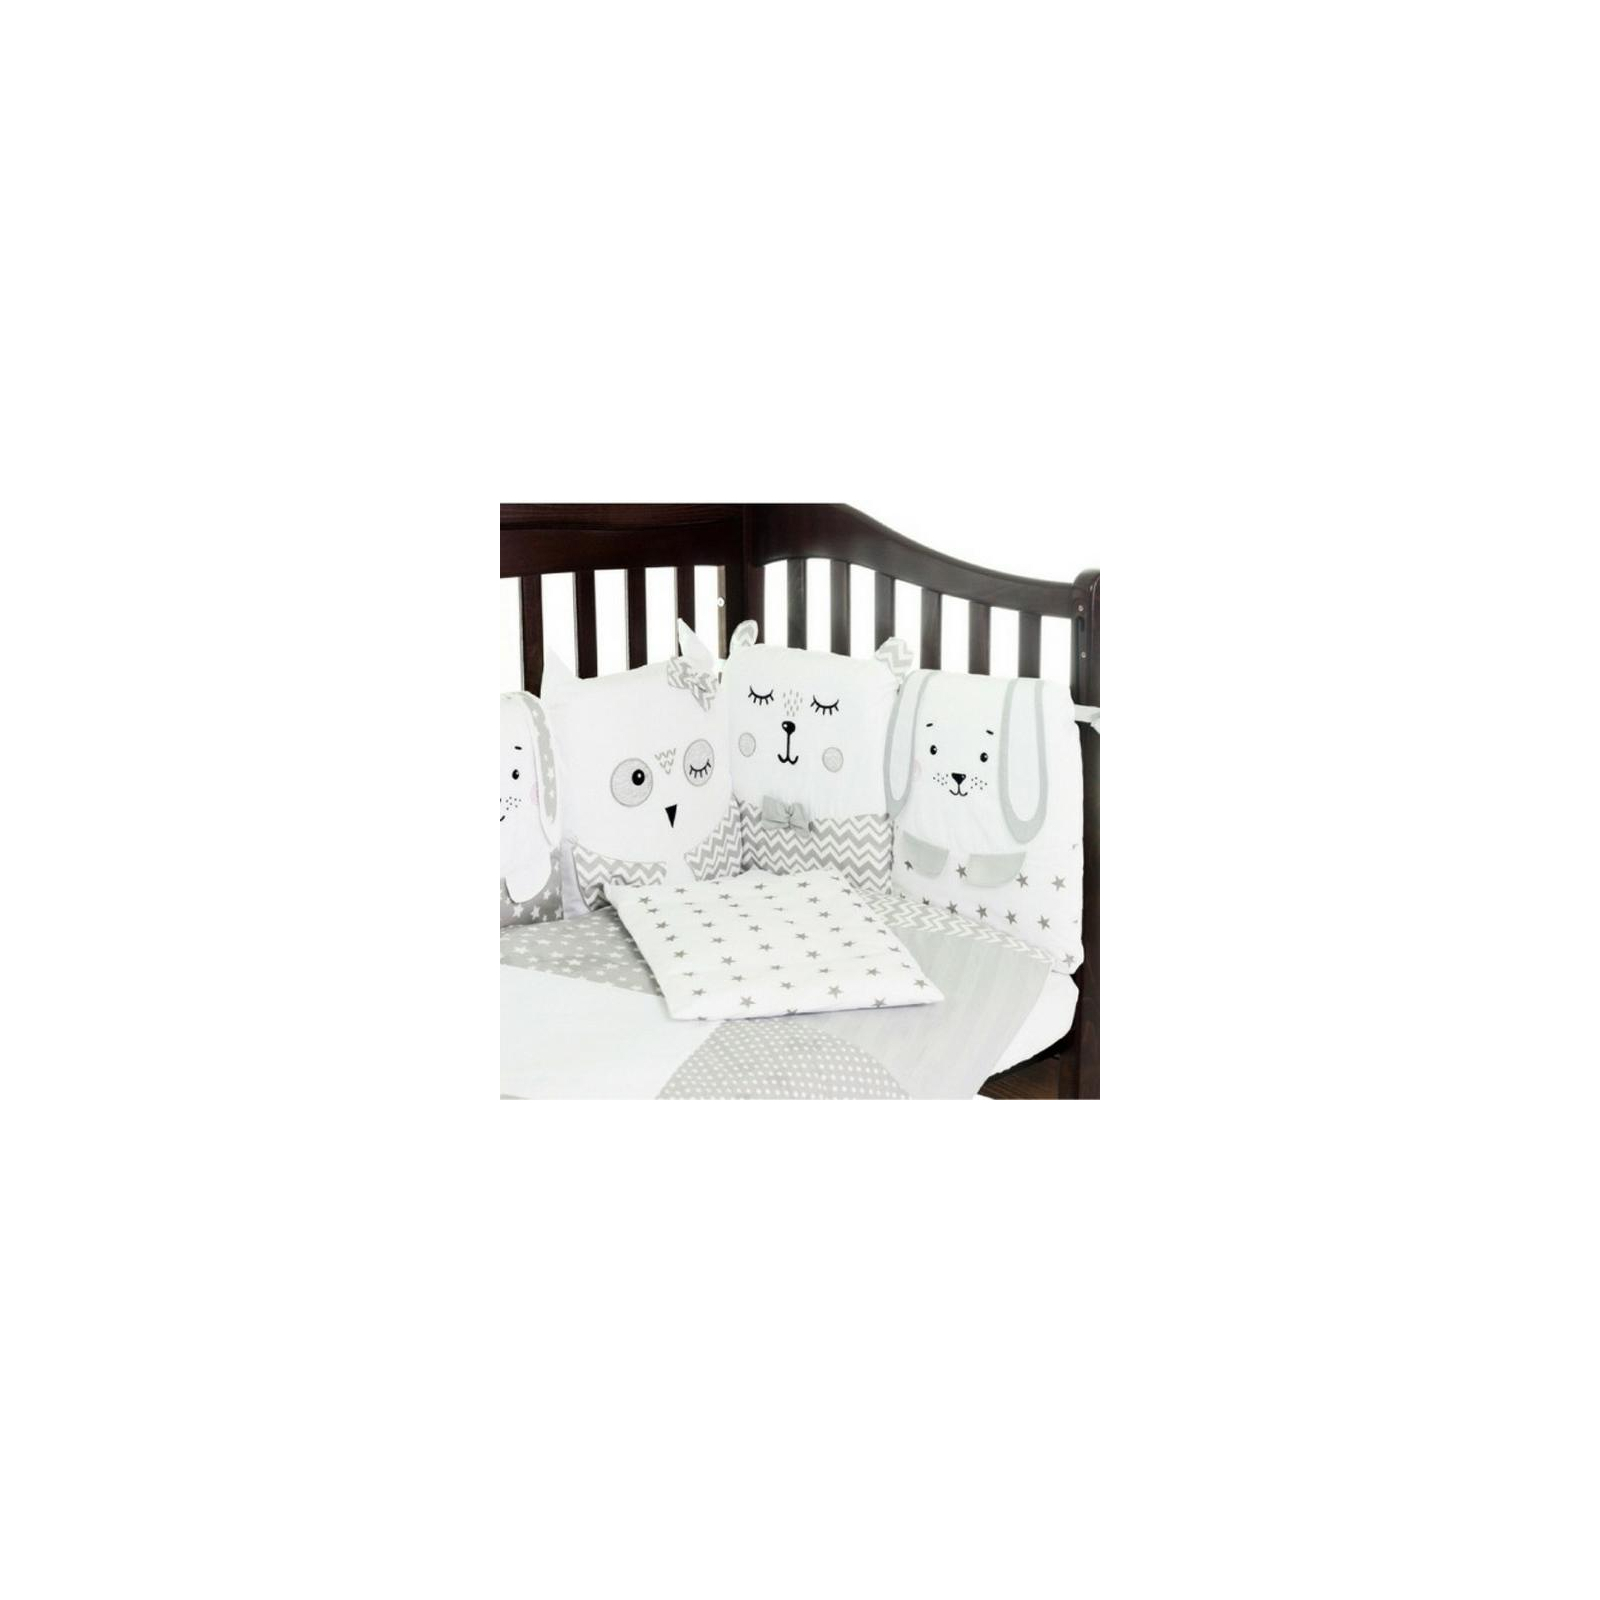 Детский постельный набор Верес Smiling animals white-gray 6ед. (216.07) изображение 3